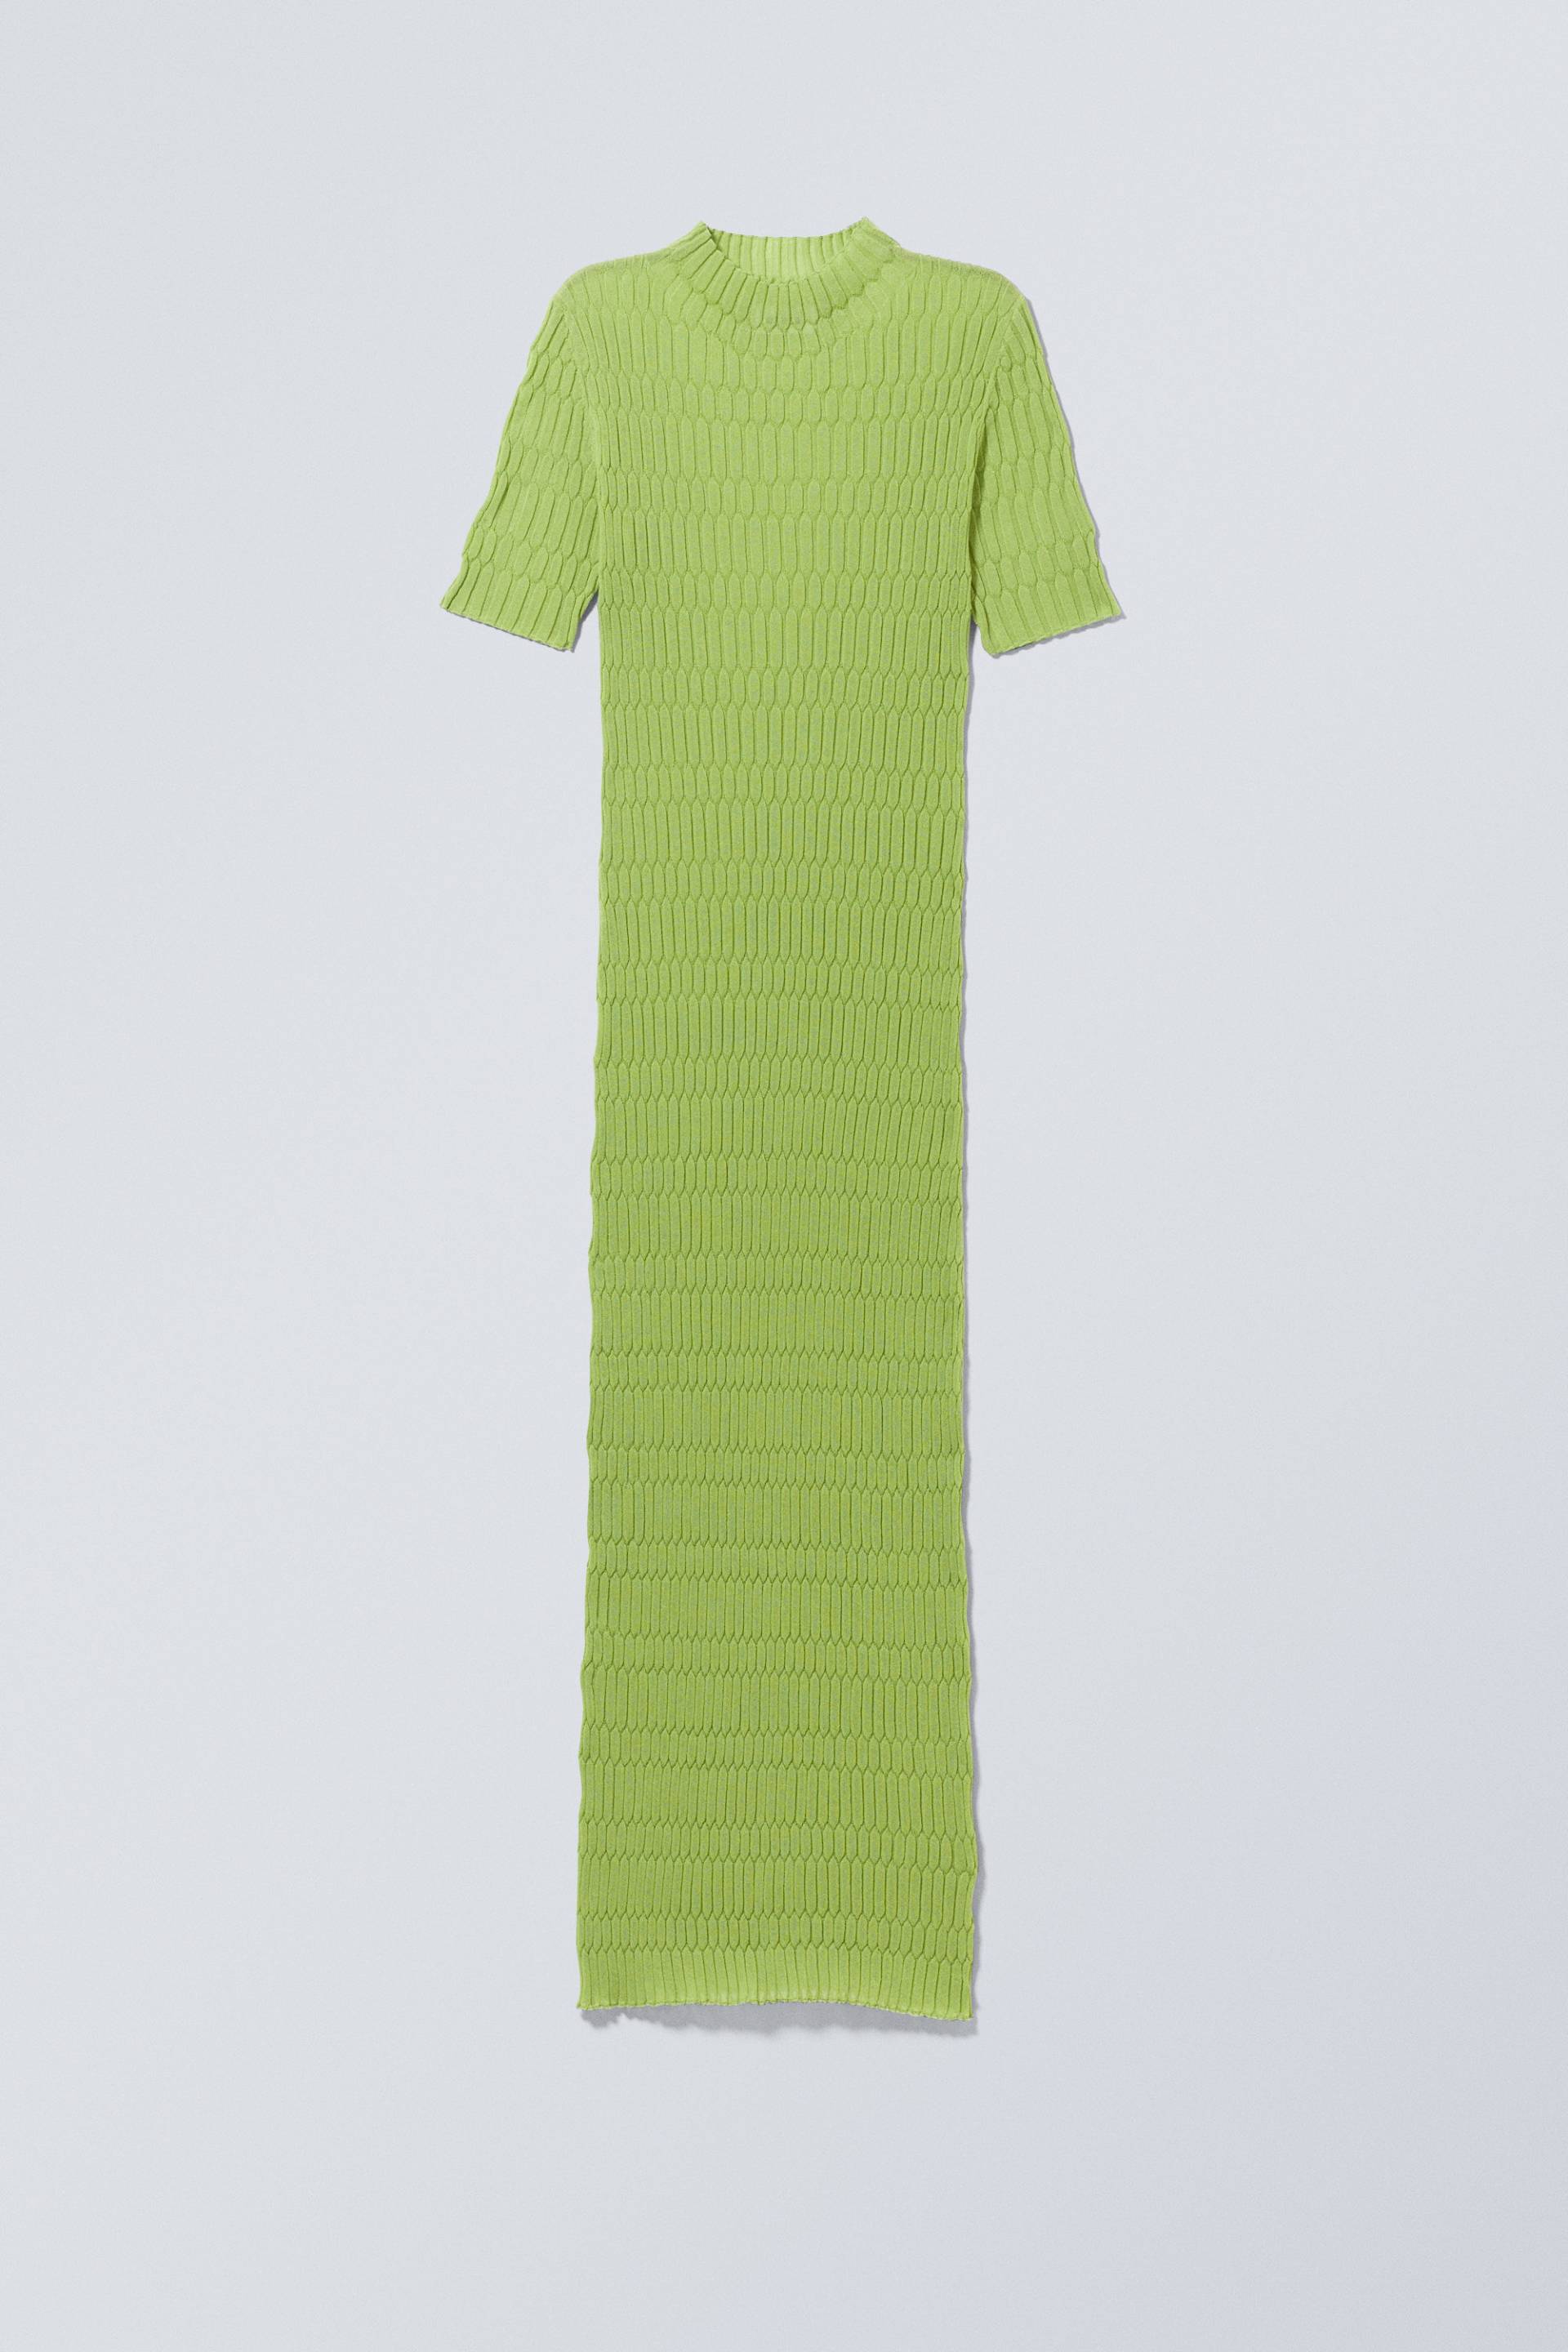 Weekday Claire Strickkleid Mohngrün, Alltagskleider in Größe M. Farbe: Poppy green von Weekday